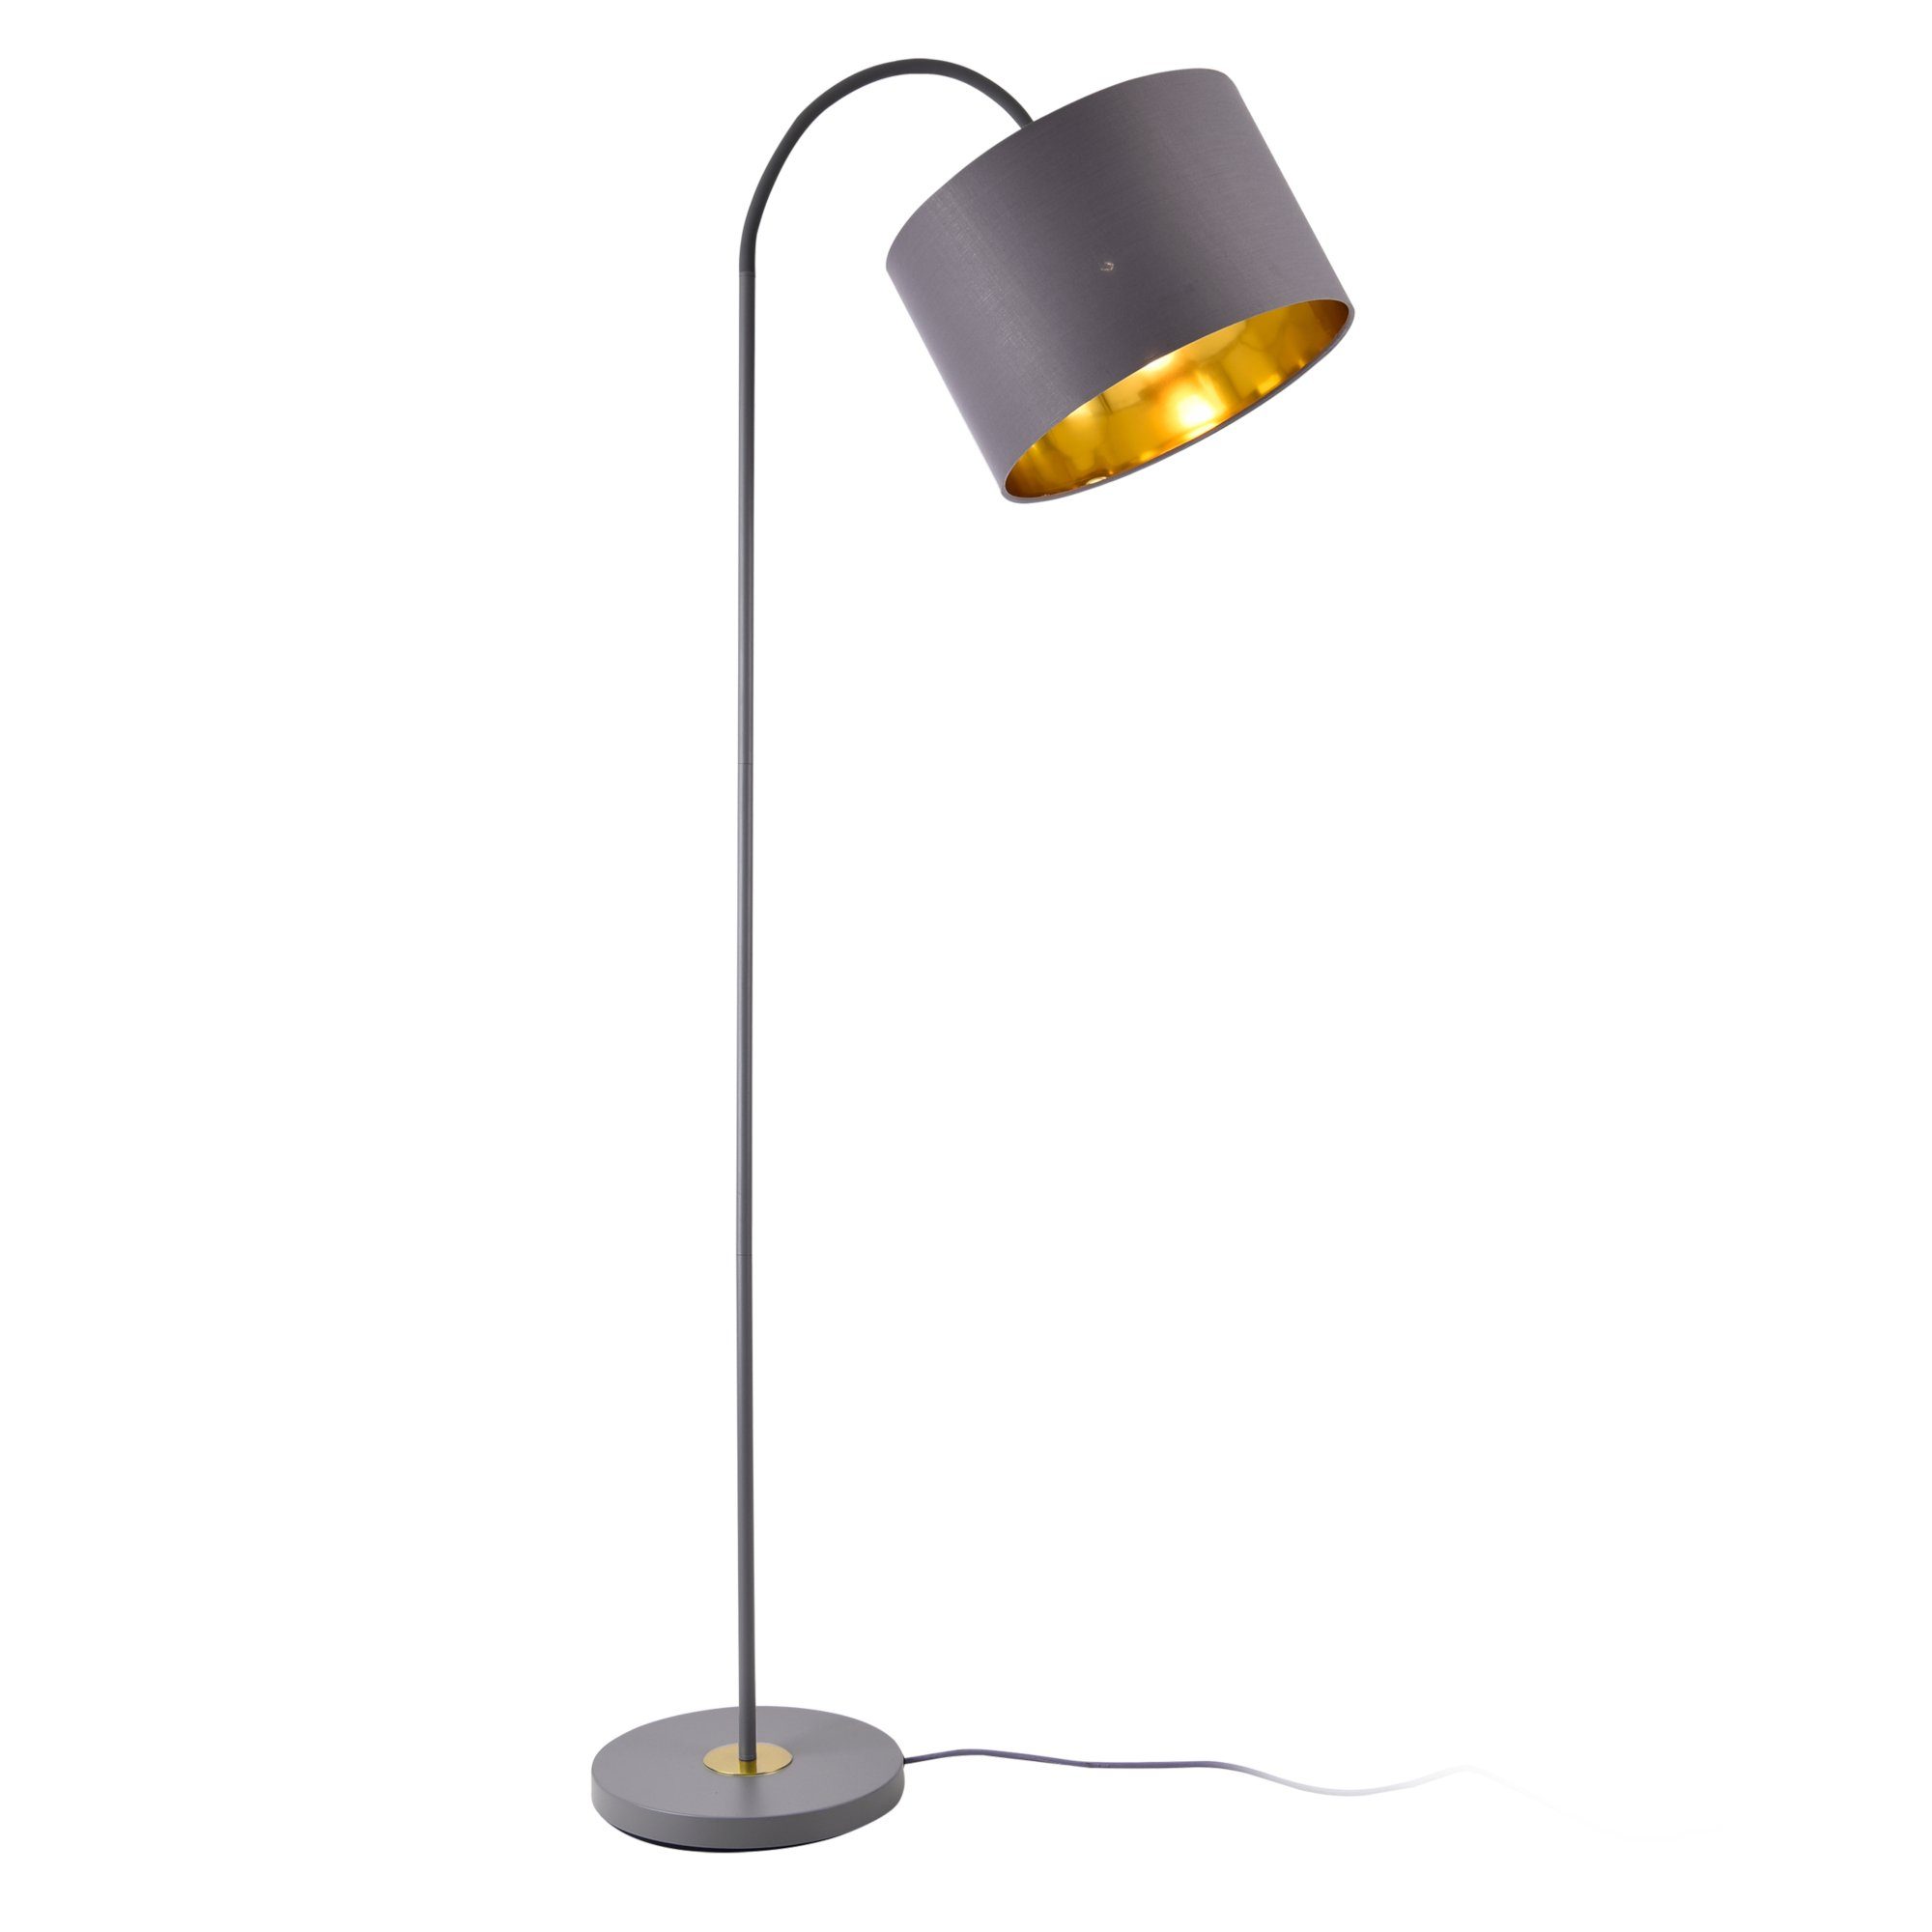 Design Stehlampe 1x E27 H90cm Weiß Stehleuchte Lampe Modern Standleuchte Glas 